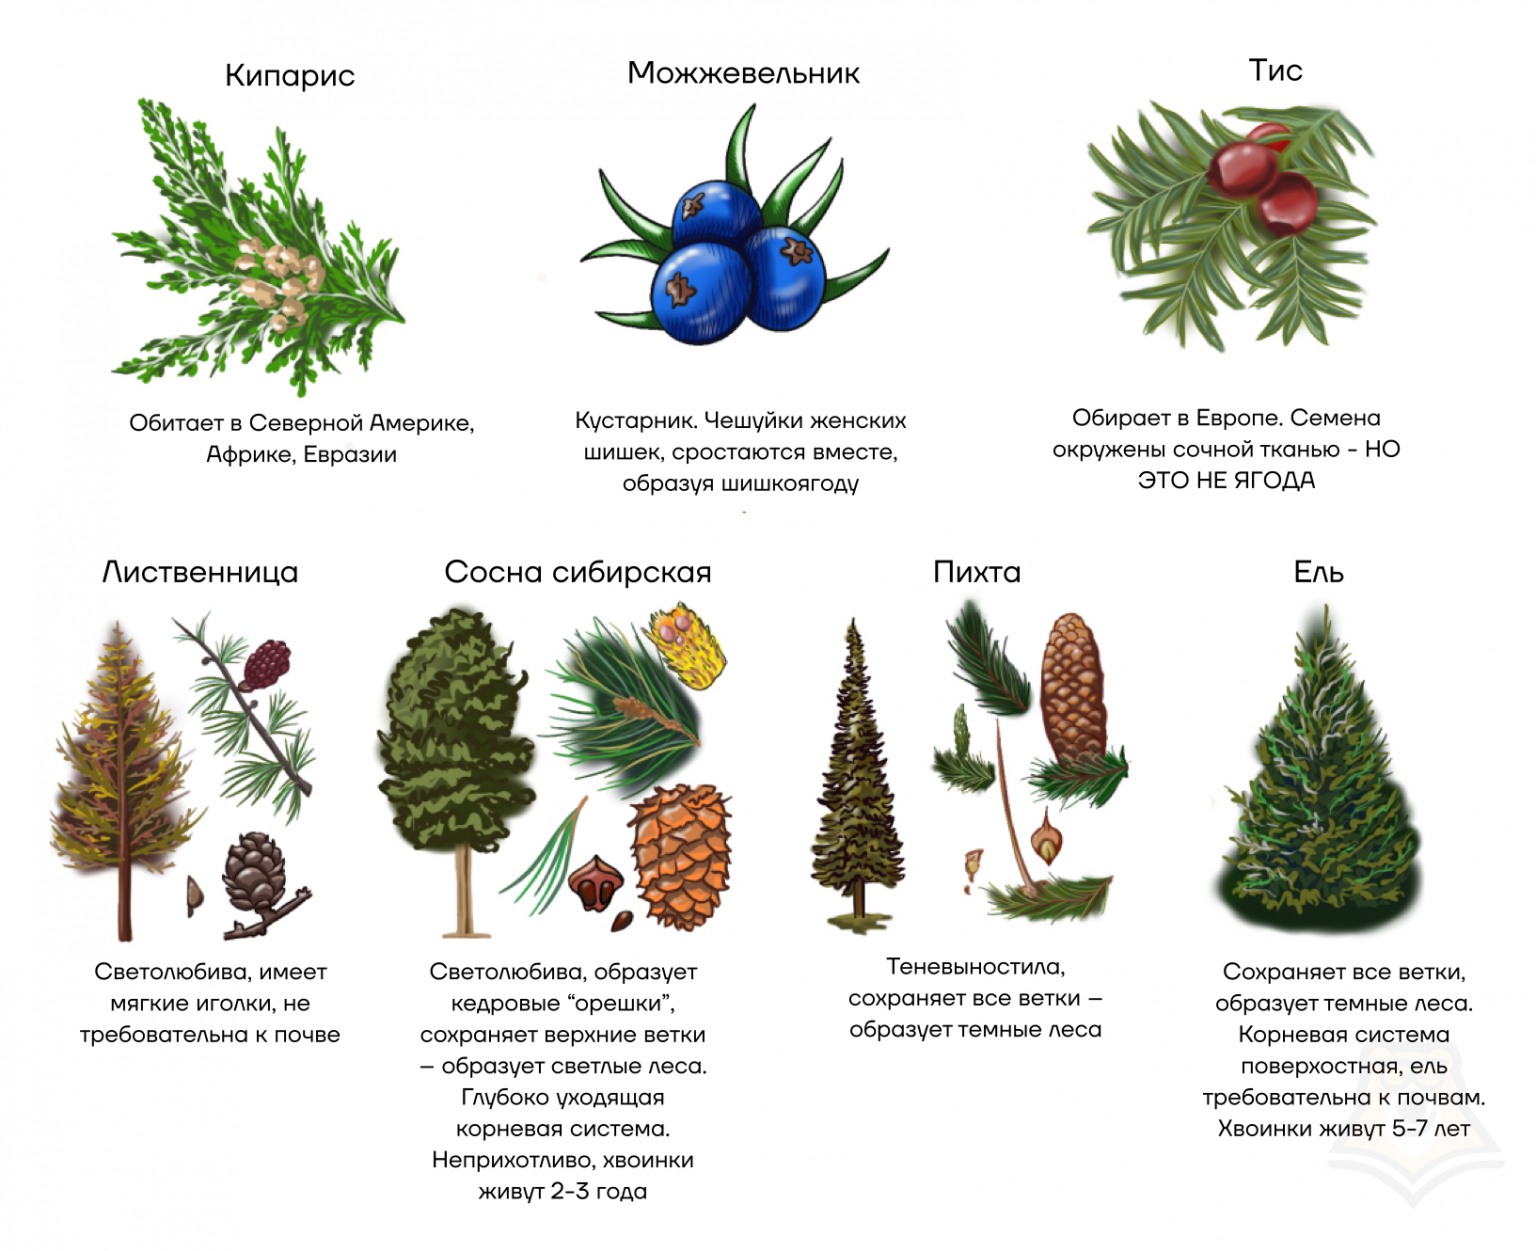 Класс хвойные таблица. Семенные растения. Пихта и ель отличия. Род хвойных с чешуевидными листьями. Класс Гнетовые Голосеменные растения.